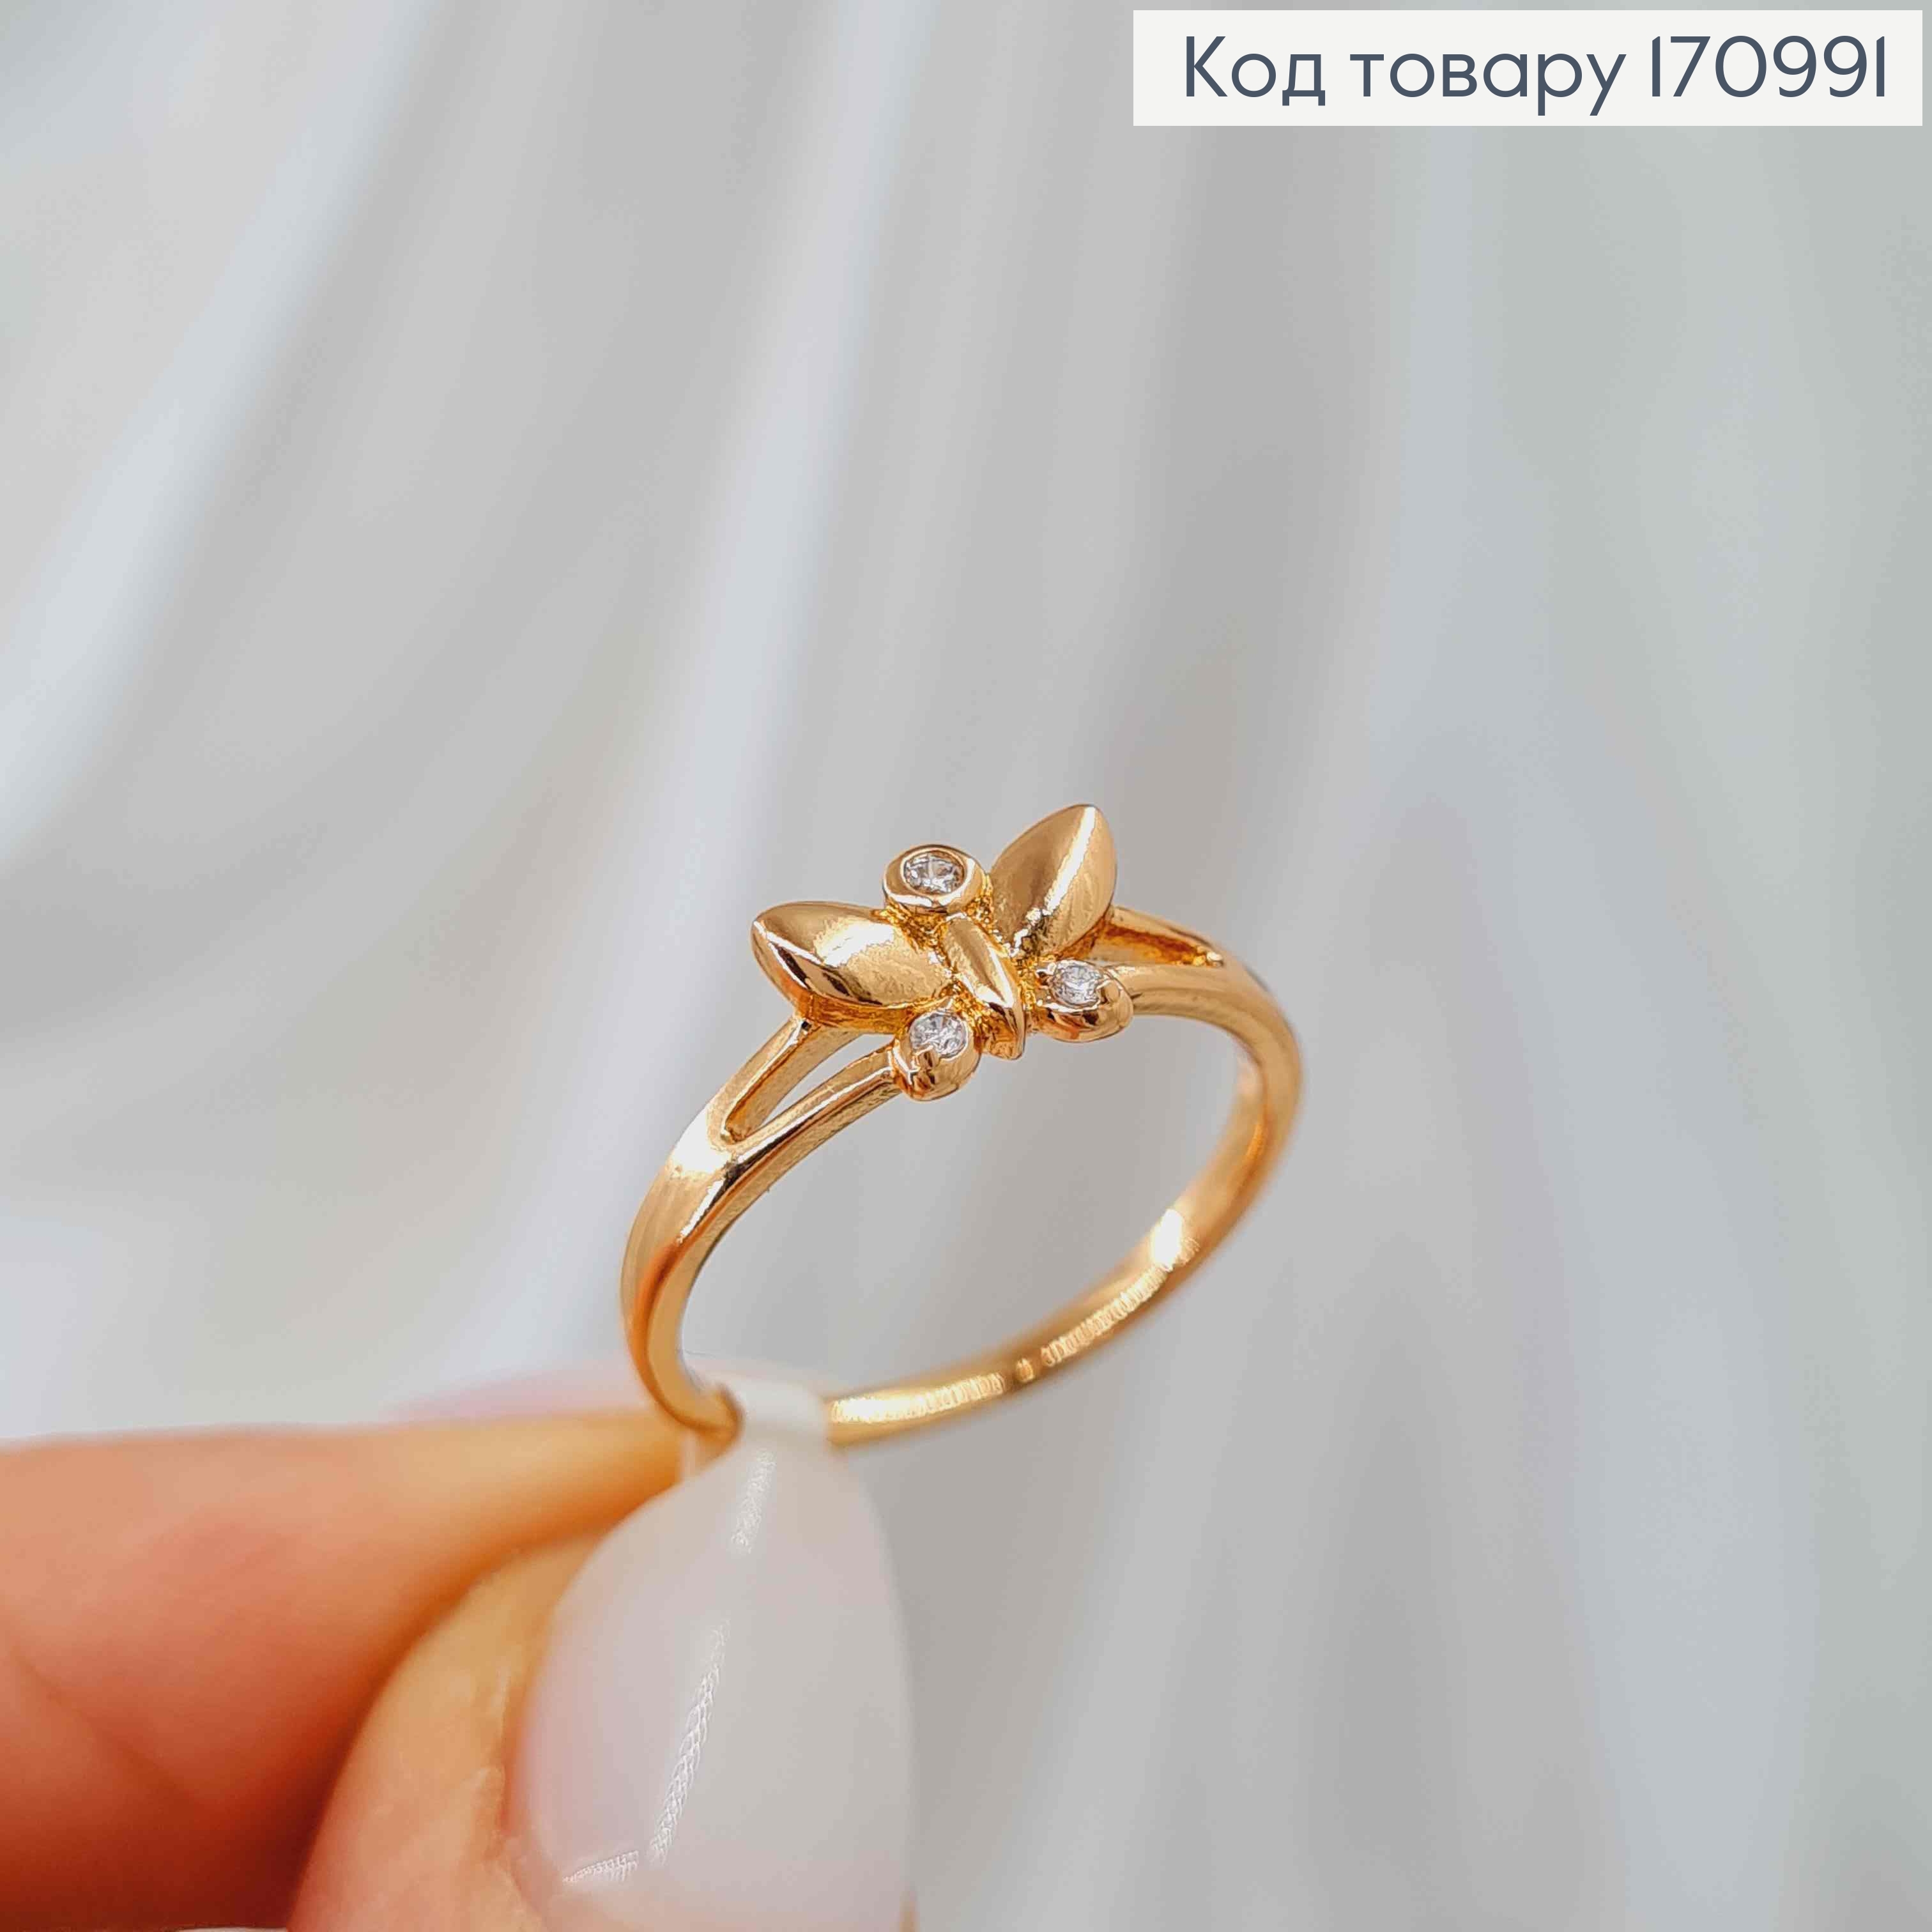 Кольцо "Бабочка" с камнями, Xuping 18К 170991 фото 3